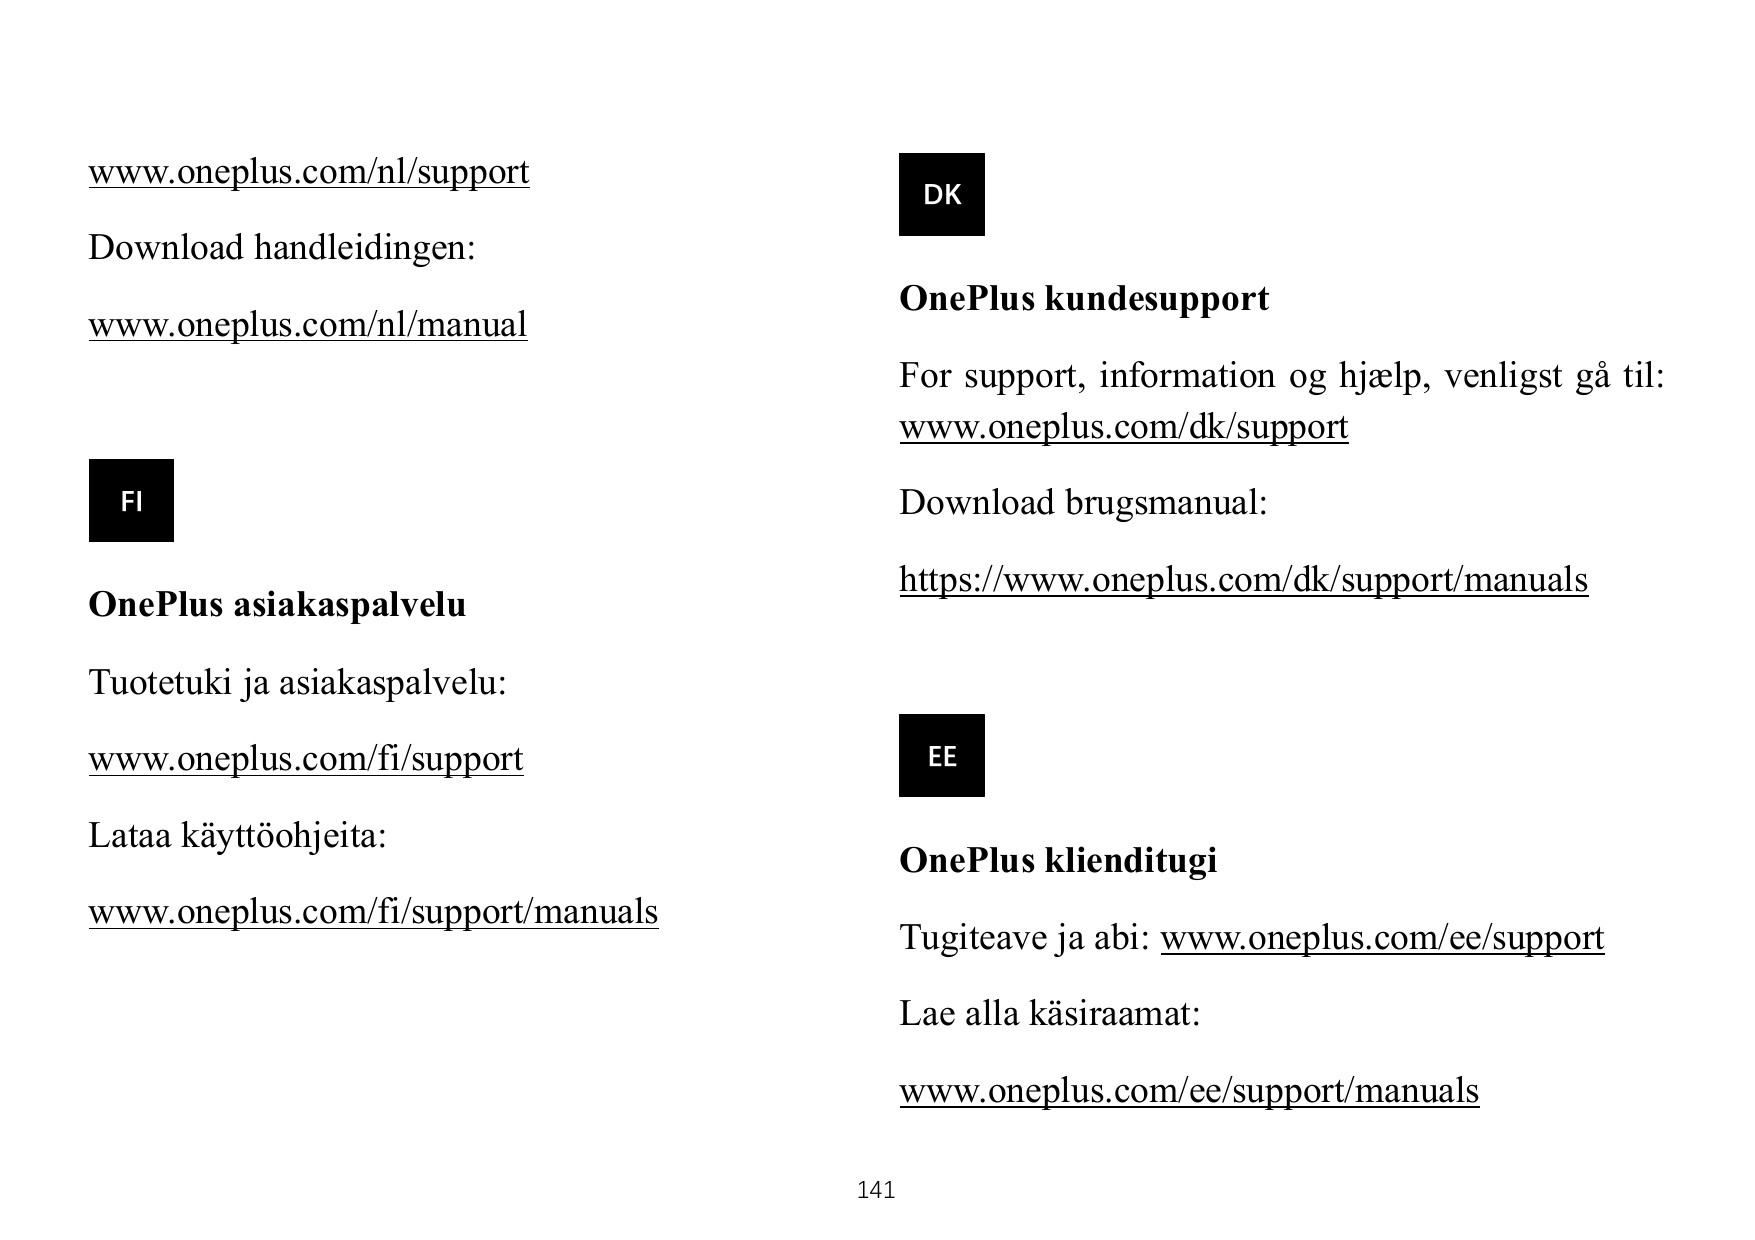 www.oneplus.com/nl/supportDKDownload handleidingen:OnePlus kundesupportwww.oneplus.com/nl/manualFor support, information og hjæl